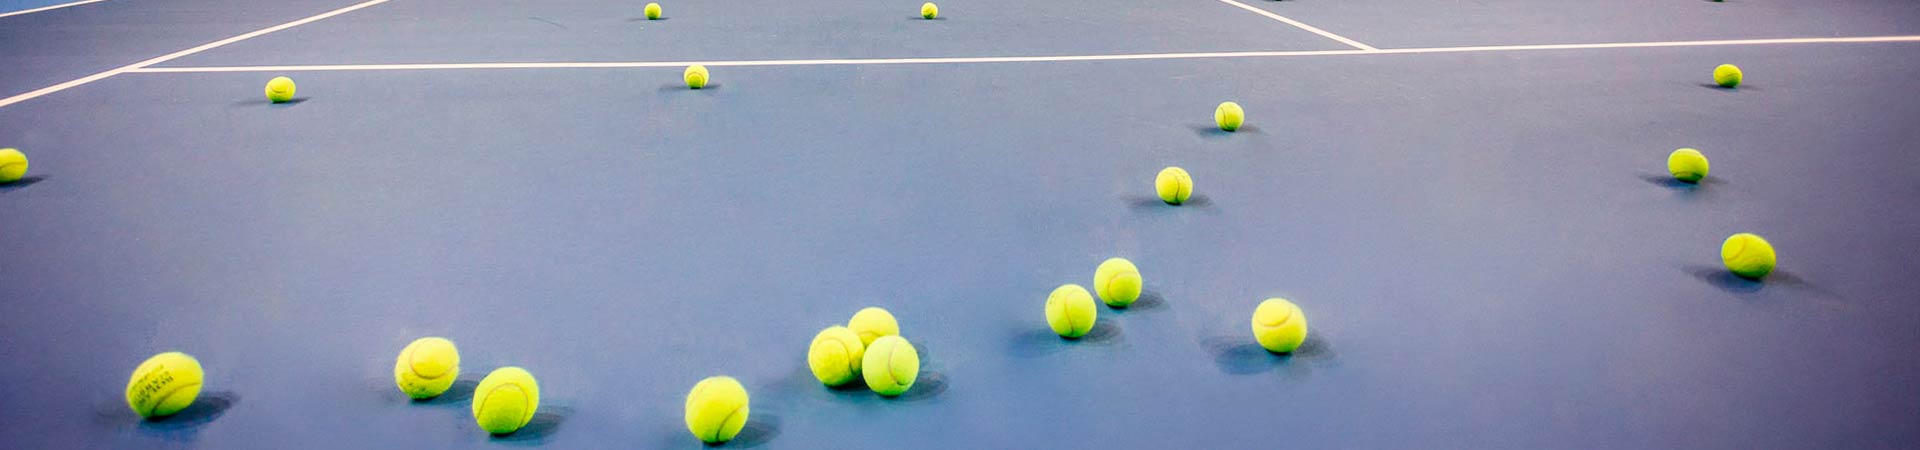 Обучение большому теннису для взрослых в Москве фото